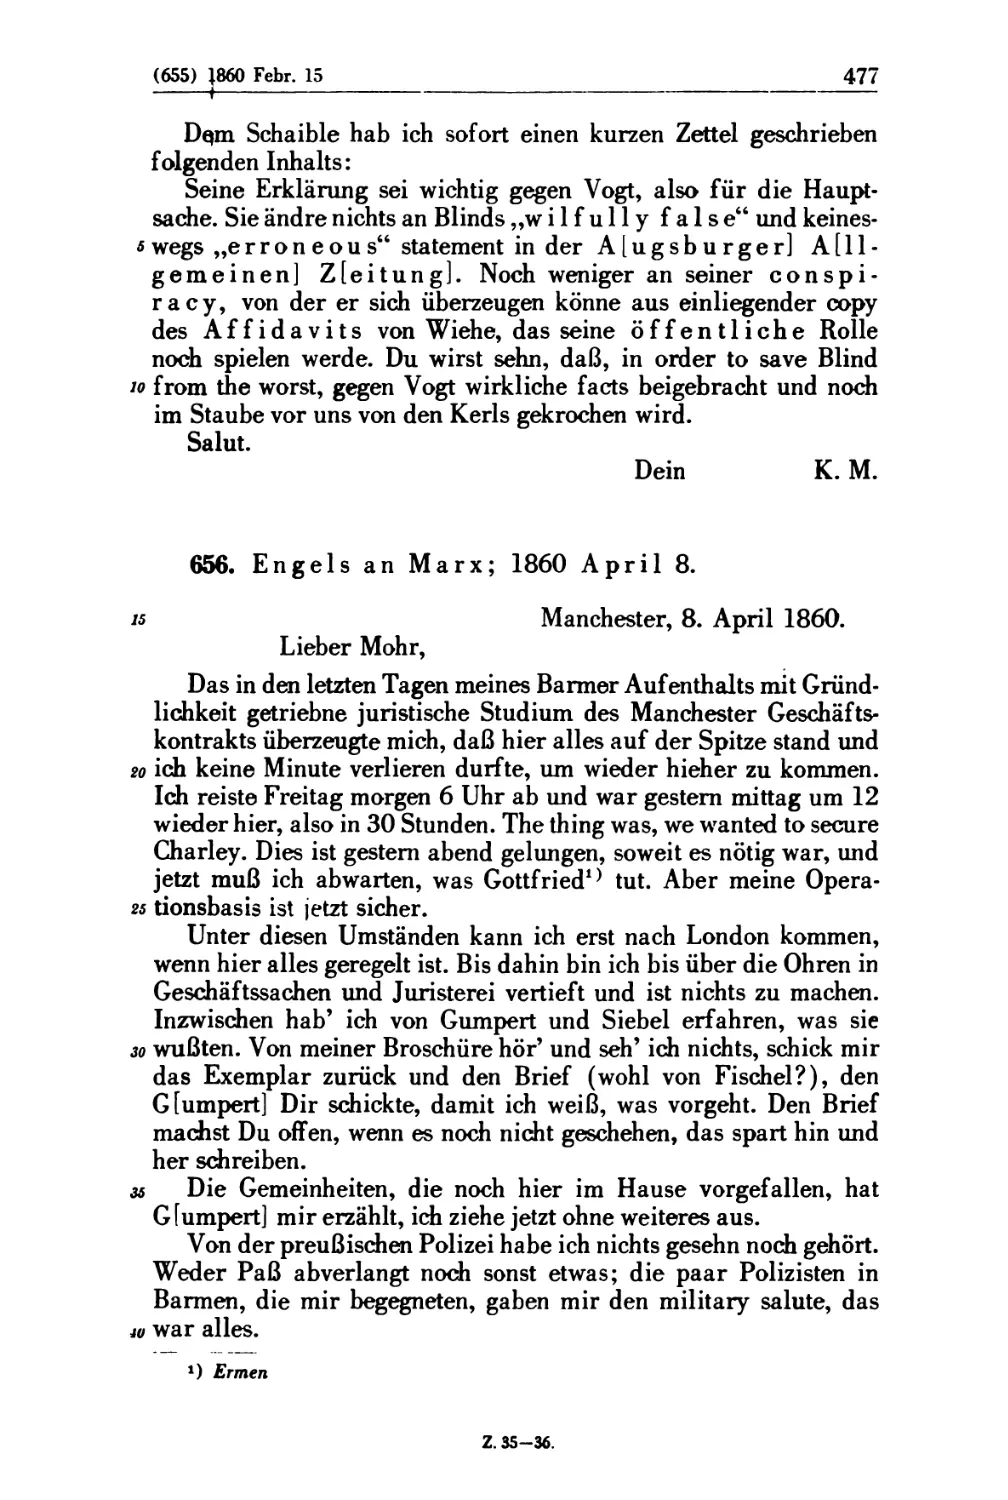 656. Engels an Marx; 1860 April 8